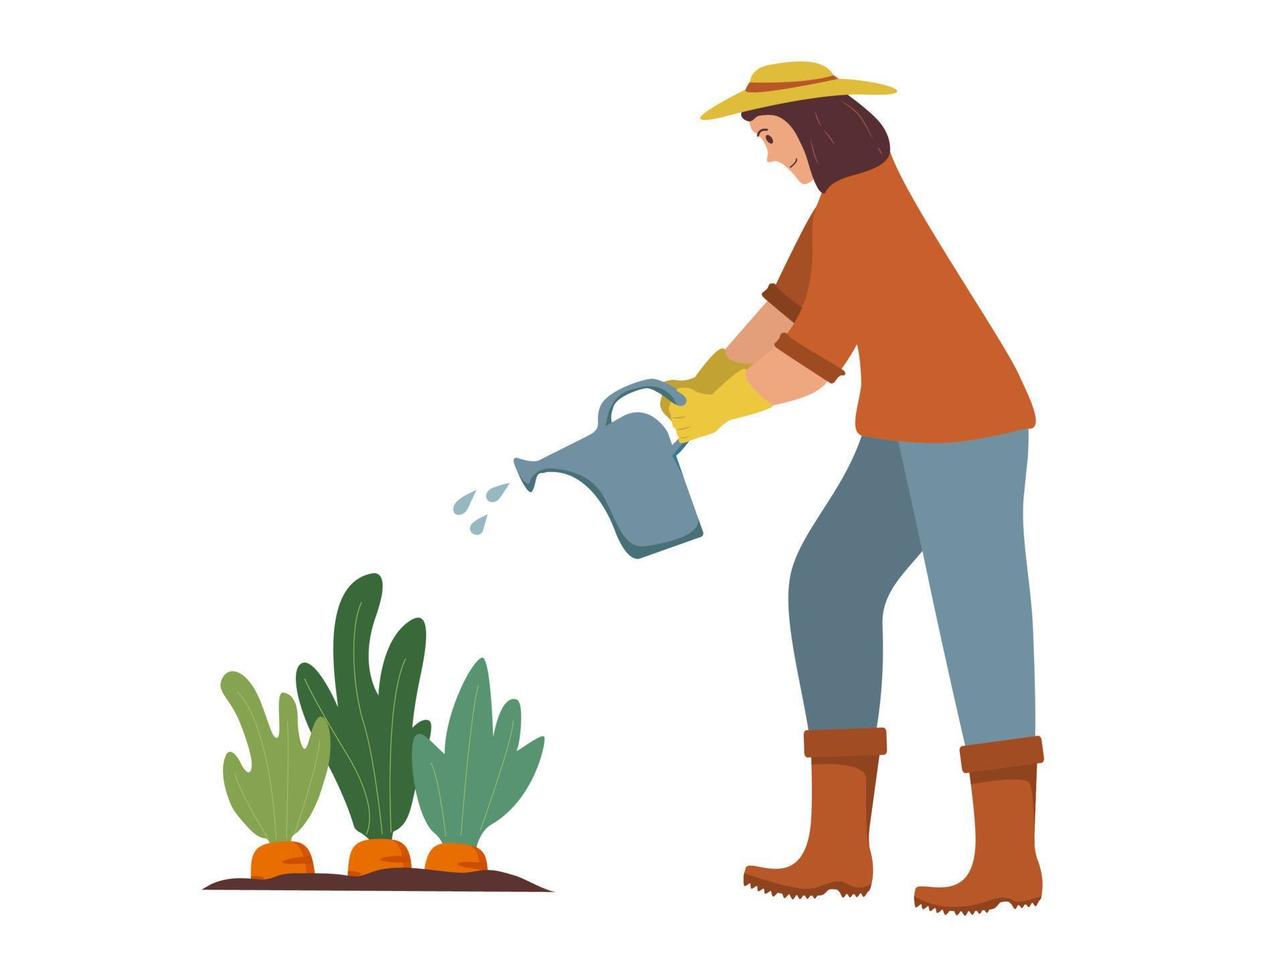 donna giardiniere innaffia le piante da un annaffiatoio. hobby giardiniere agricolo. persona del giardinaggio. donna che innaffia le verdure una carota. lavorare in giardino. impianto di irrigazione dell'agricoltore. vettore